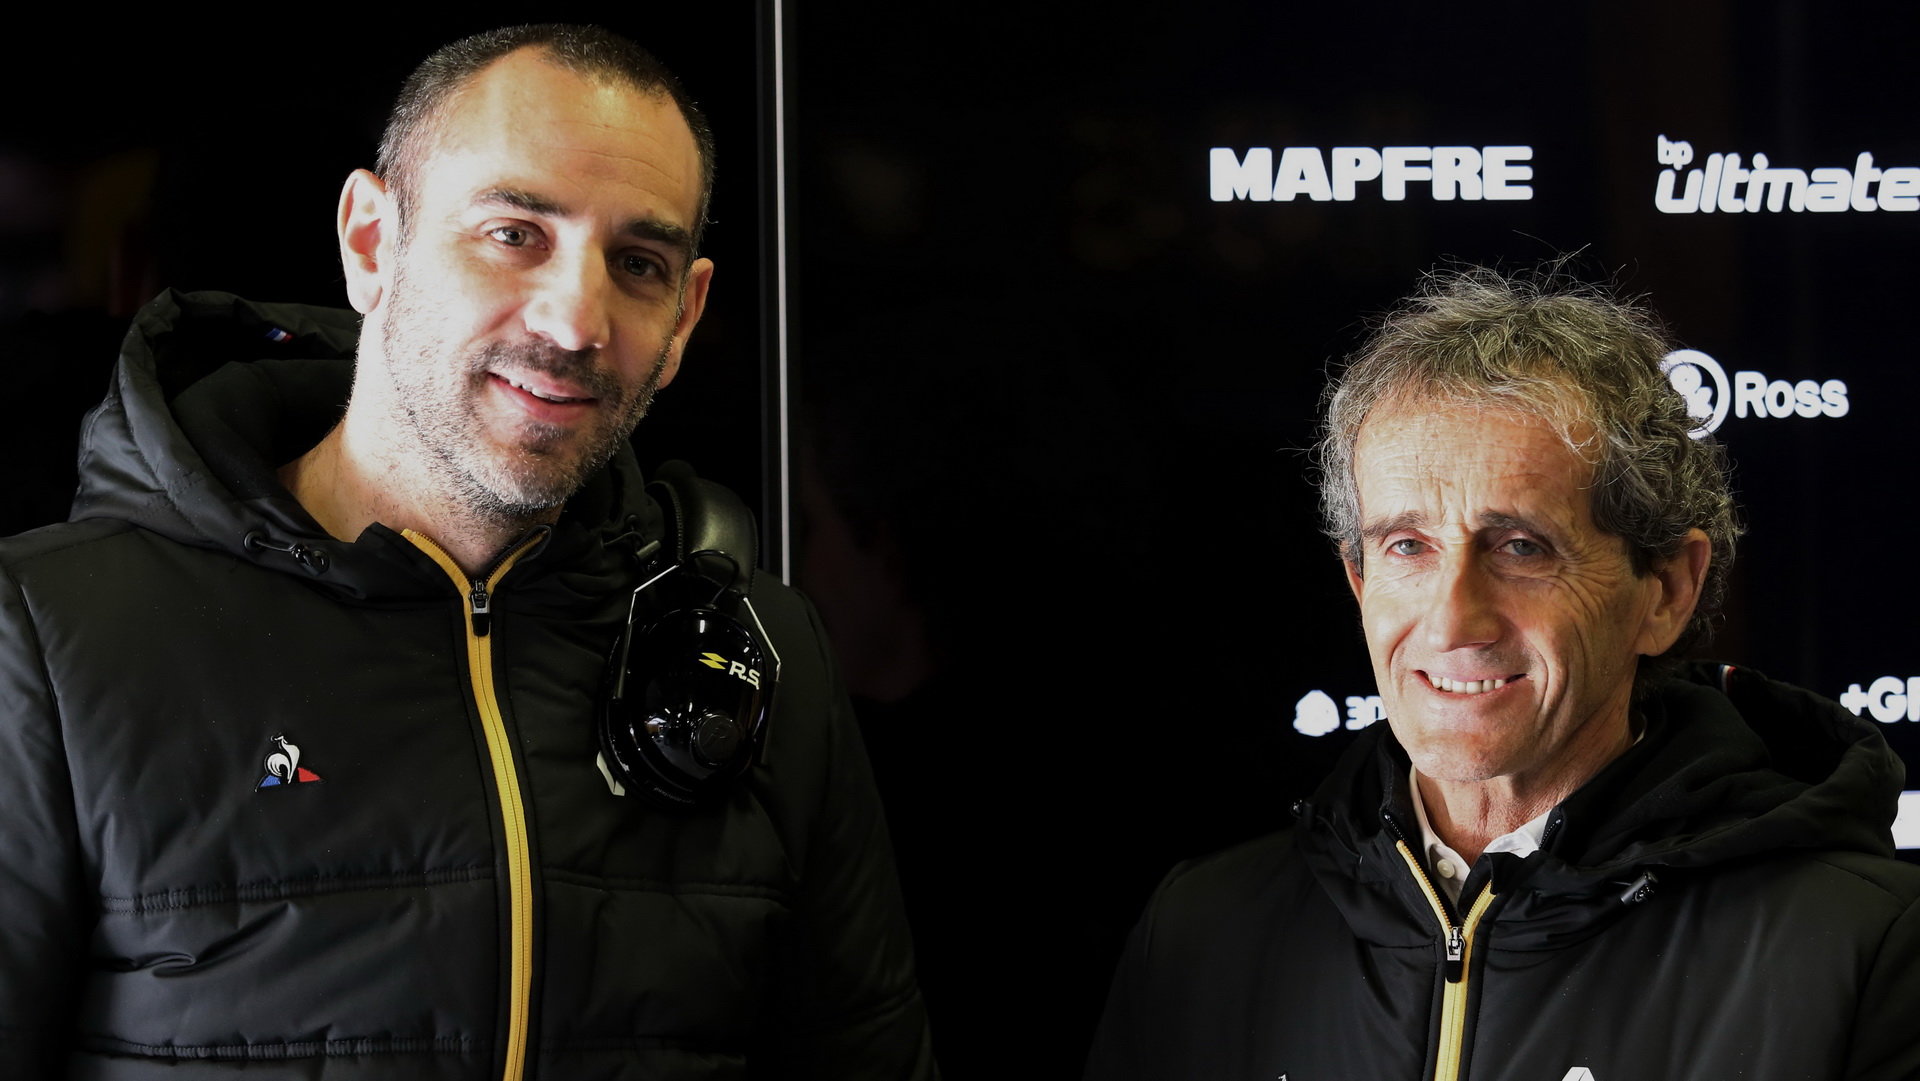 Cyril Abiteboul a Alain Prost při testech v Barceloně